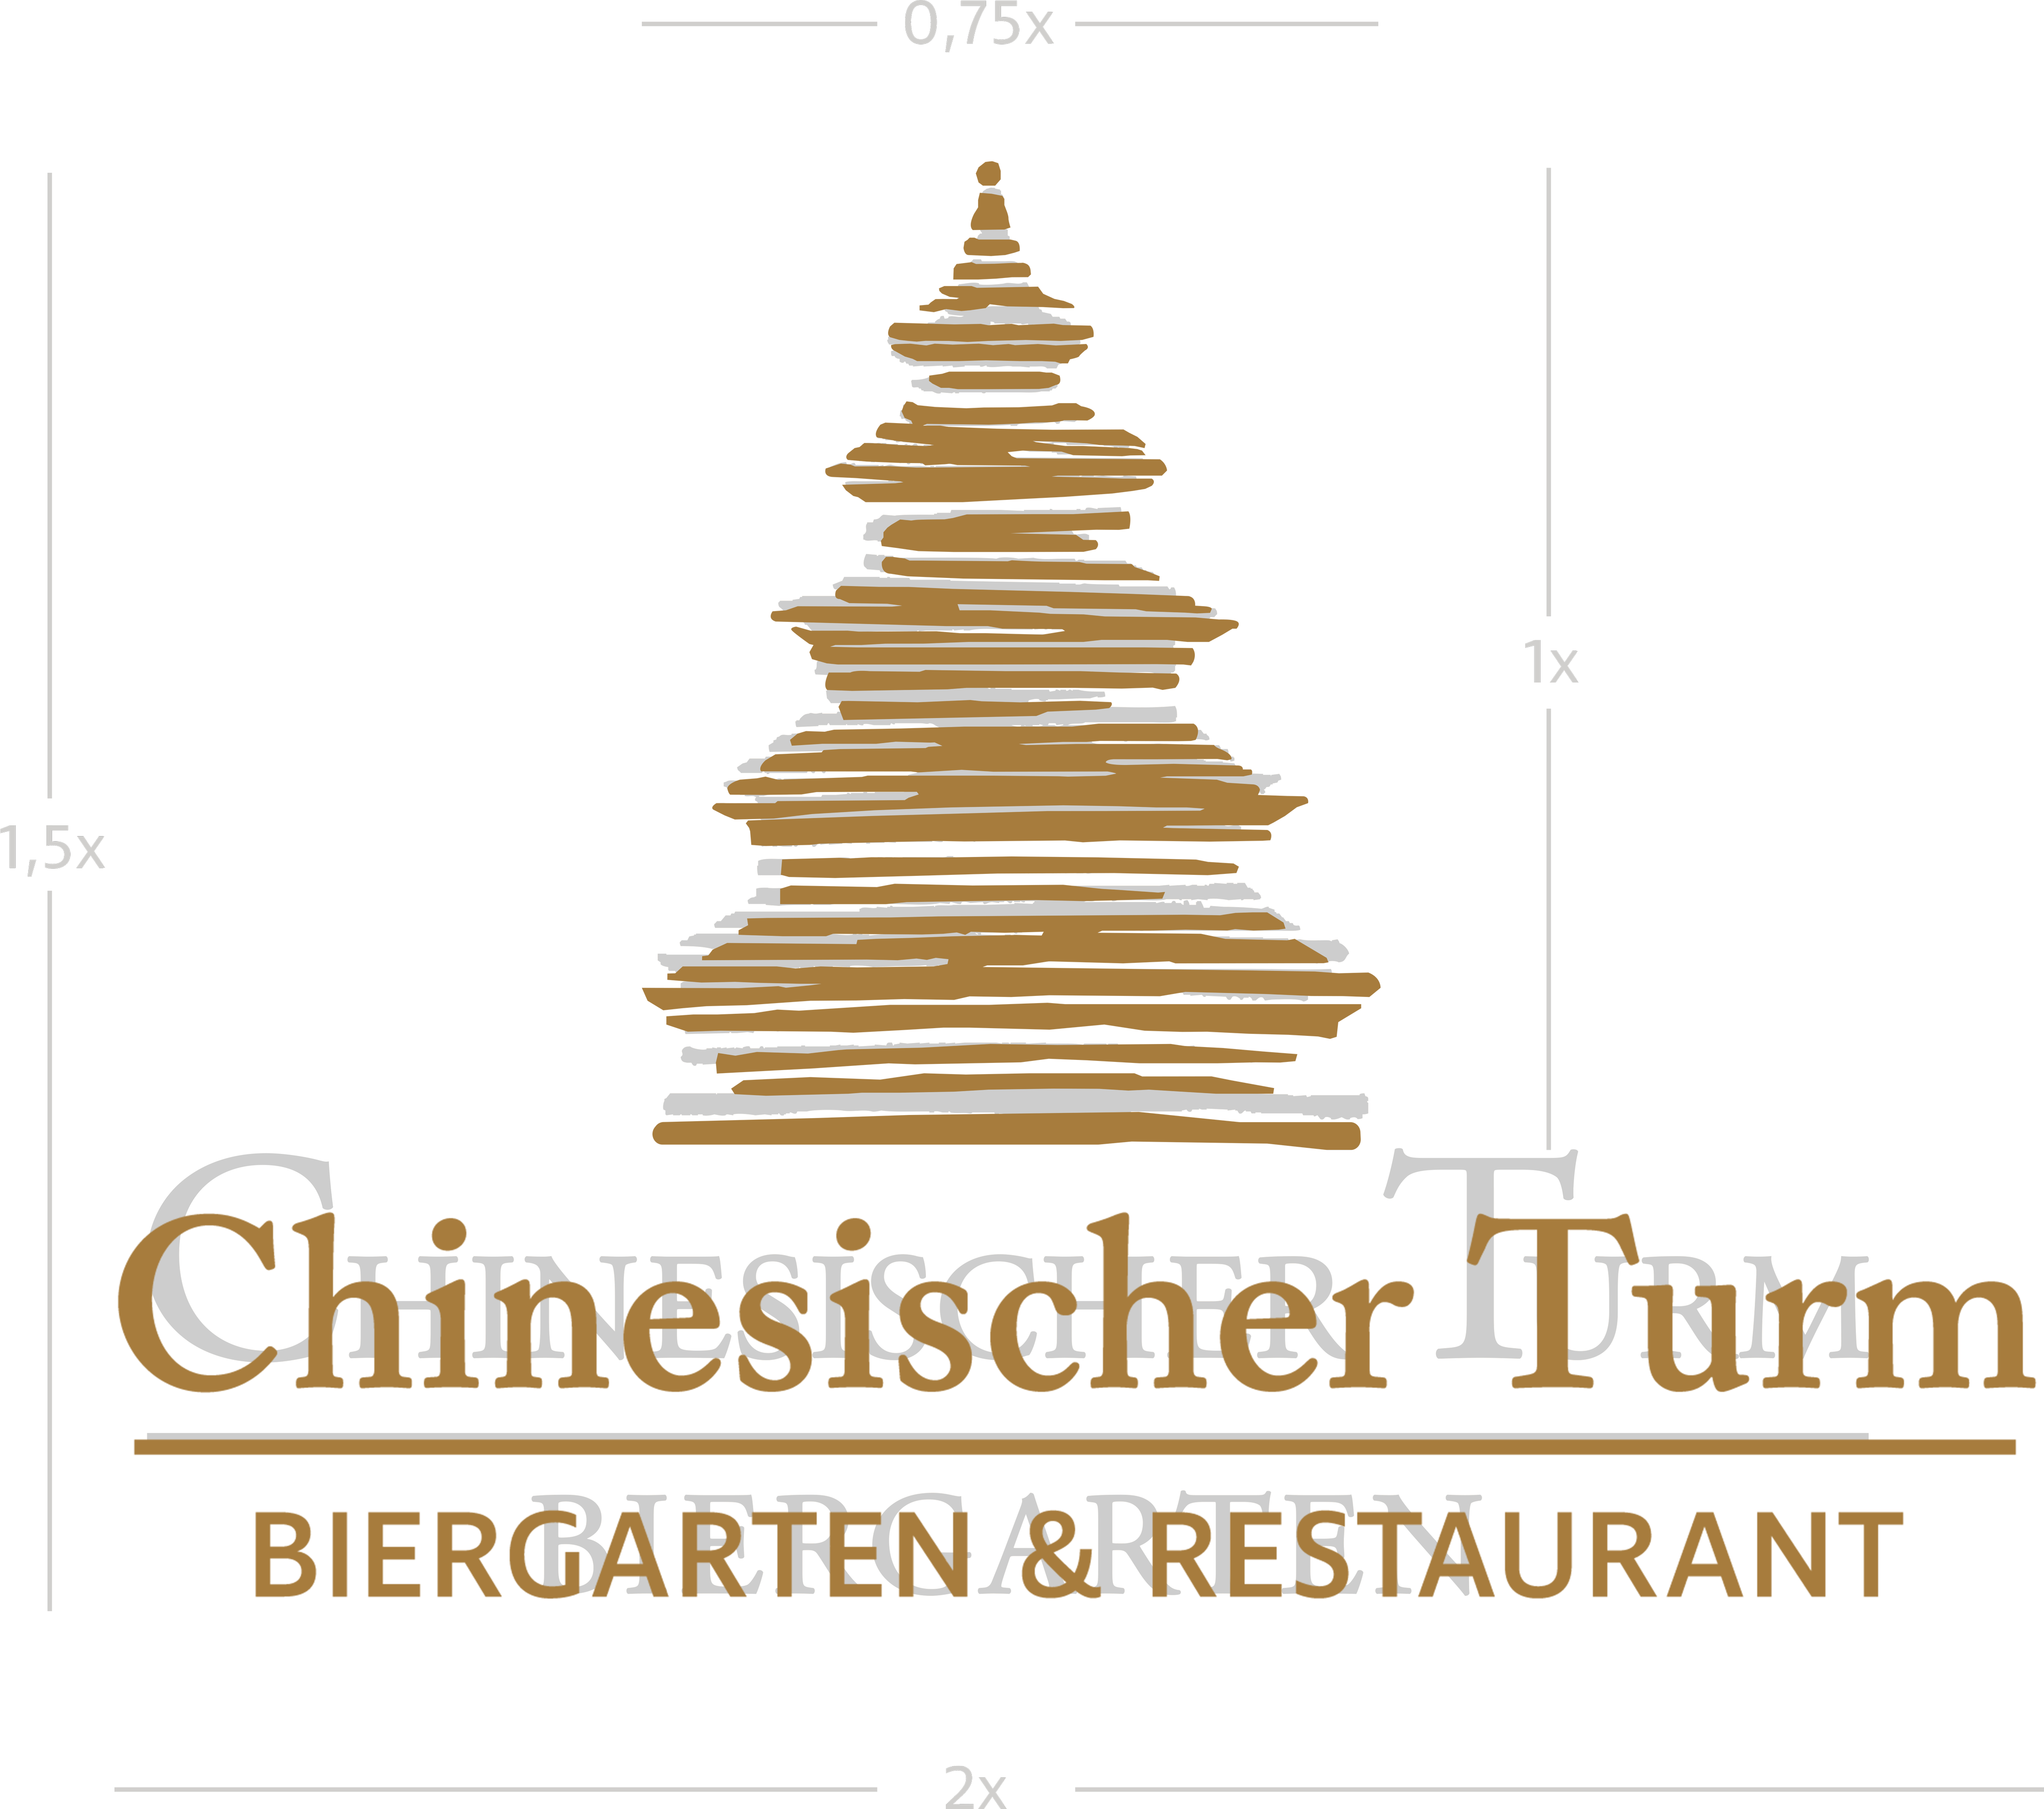 Das neue Logo zeigt den Chinaturm in Silhouette mit Linien abgebildet, darunter das Text Logo Chinesischer Turm, Biergarten und Restaurant